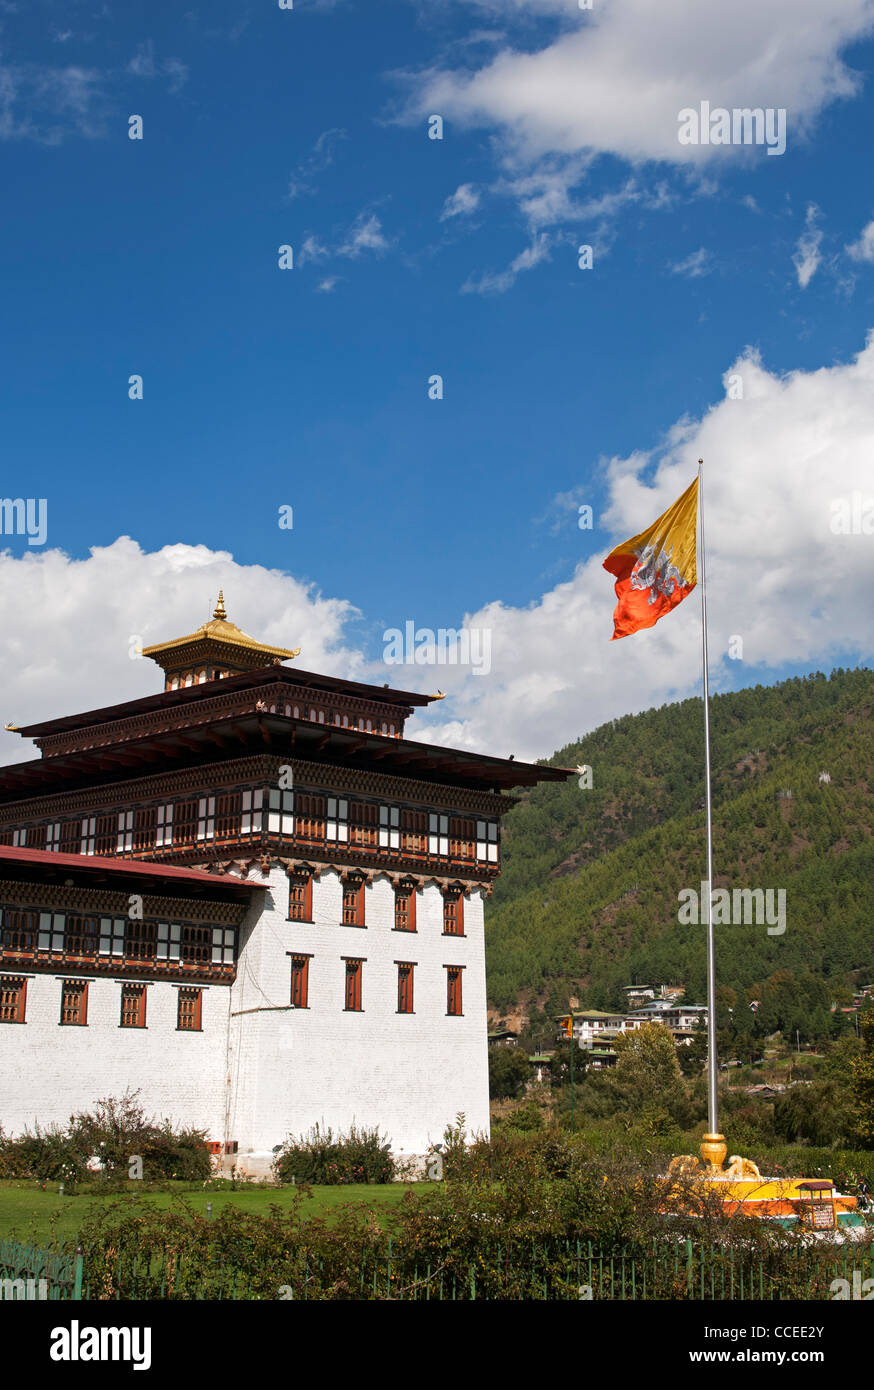 Le drapeau national du Bhoutan s'agite au siège du gouvernement Thimphu Dzong ou Trashichhoe Dzong, Thimphu, Bhoutan Banque D'Images